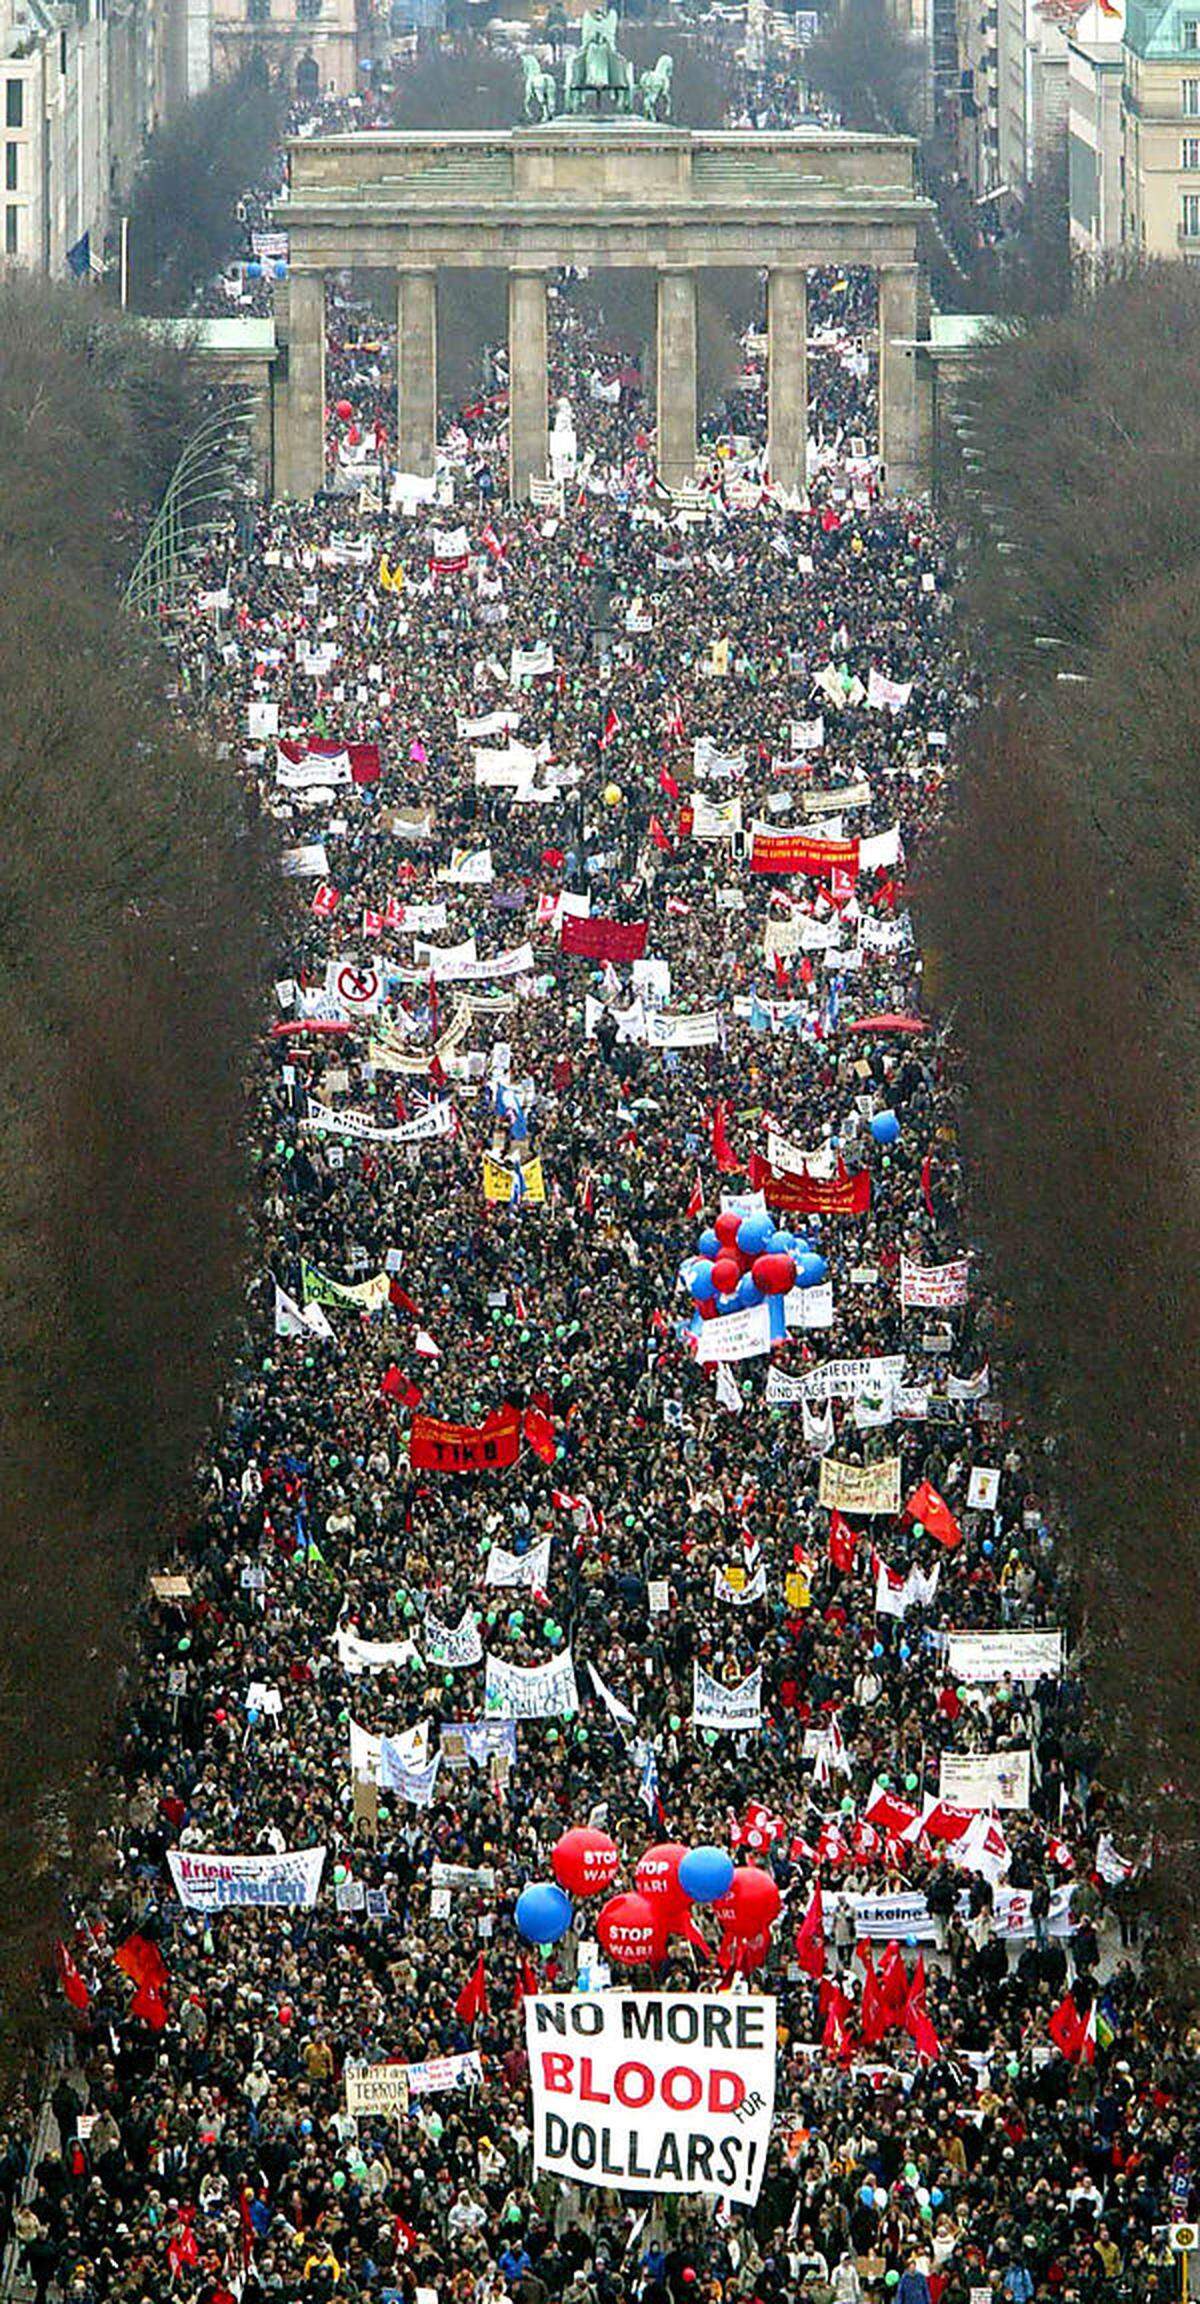 Bei den Protesten in Berlin gingen auch einige Mitglieder des Schröder-Kabinetts auf die Straße - insgesamt waren bis zu 300.000 Menschen dort unterwegs.